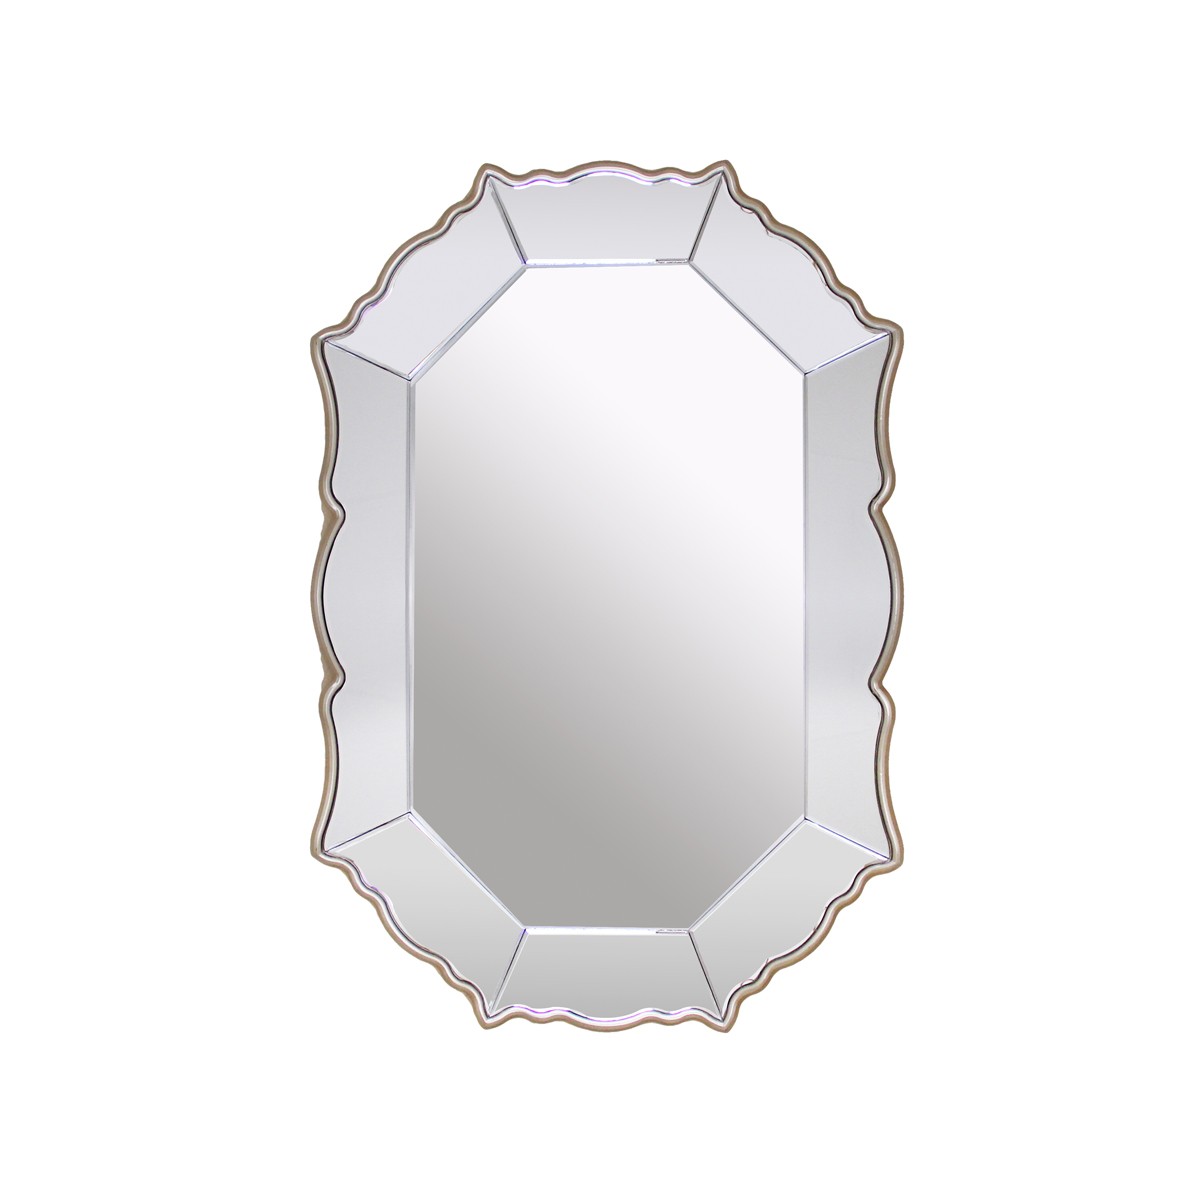 Rococo -  Decorative Metal and Glass Mirror